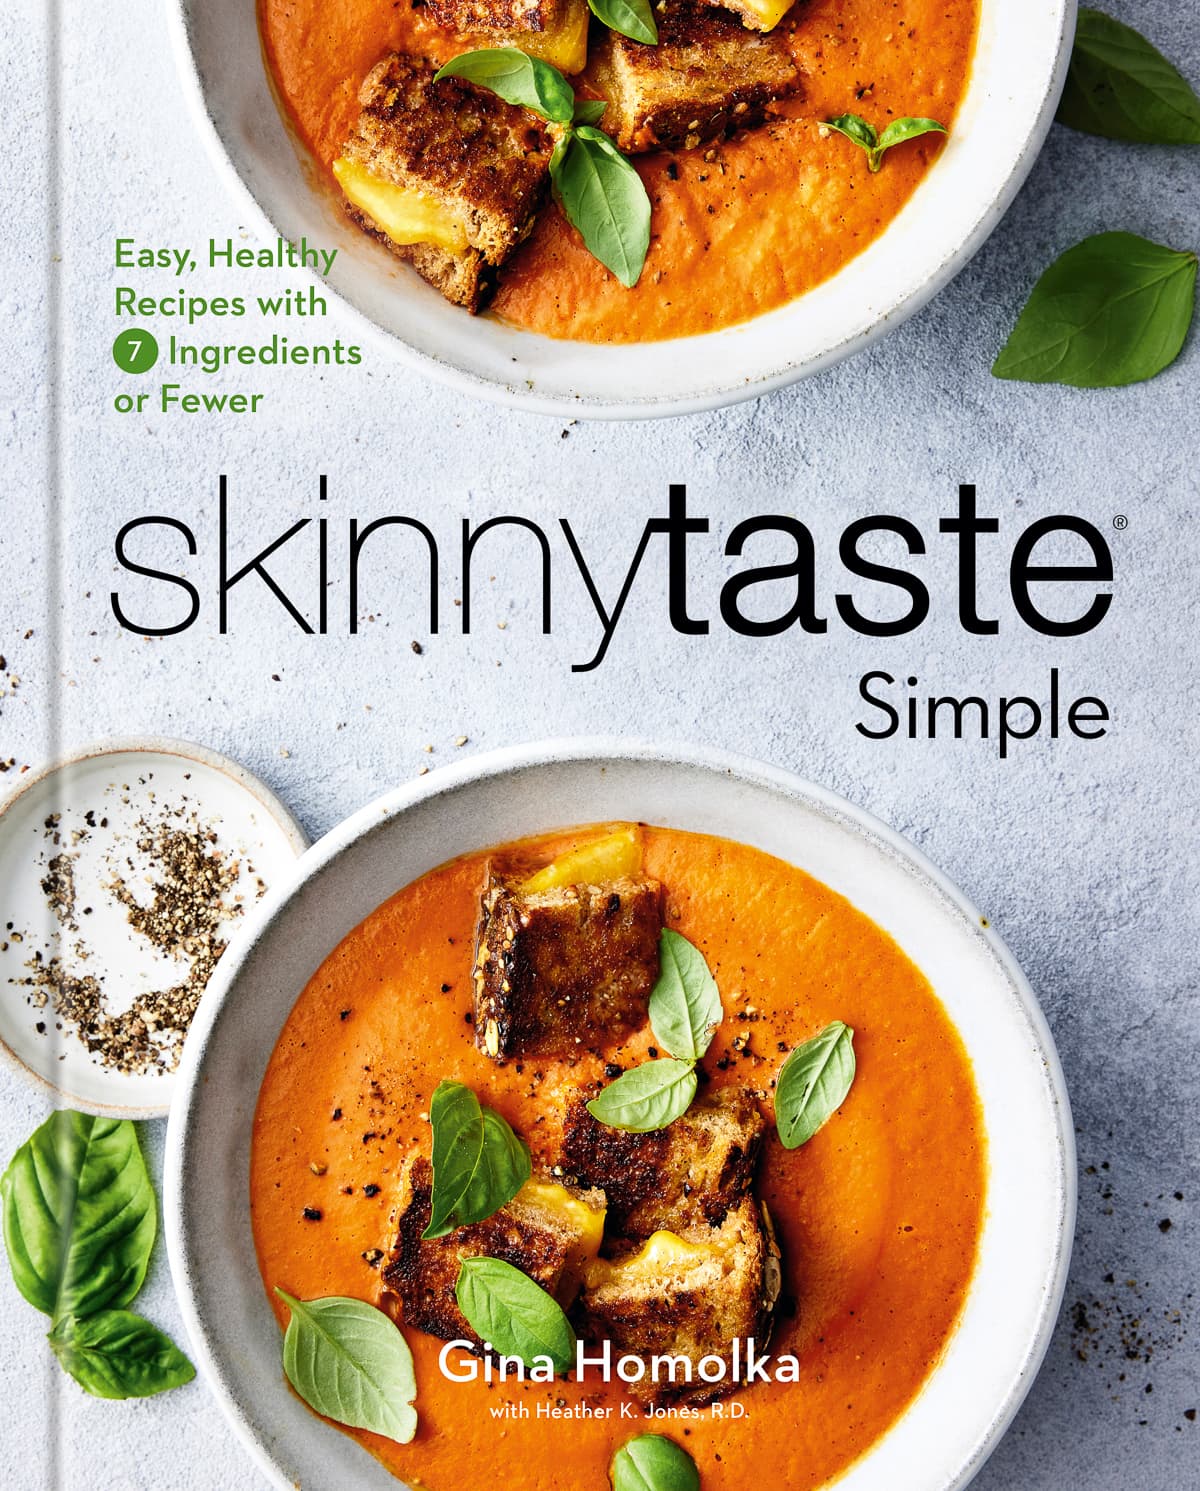 Skinnytaste Simple - Révélation de la couverture du livre de cuisine